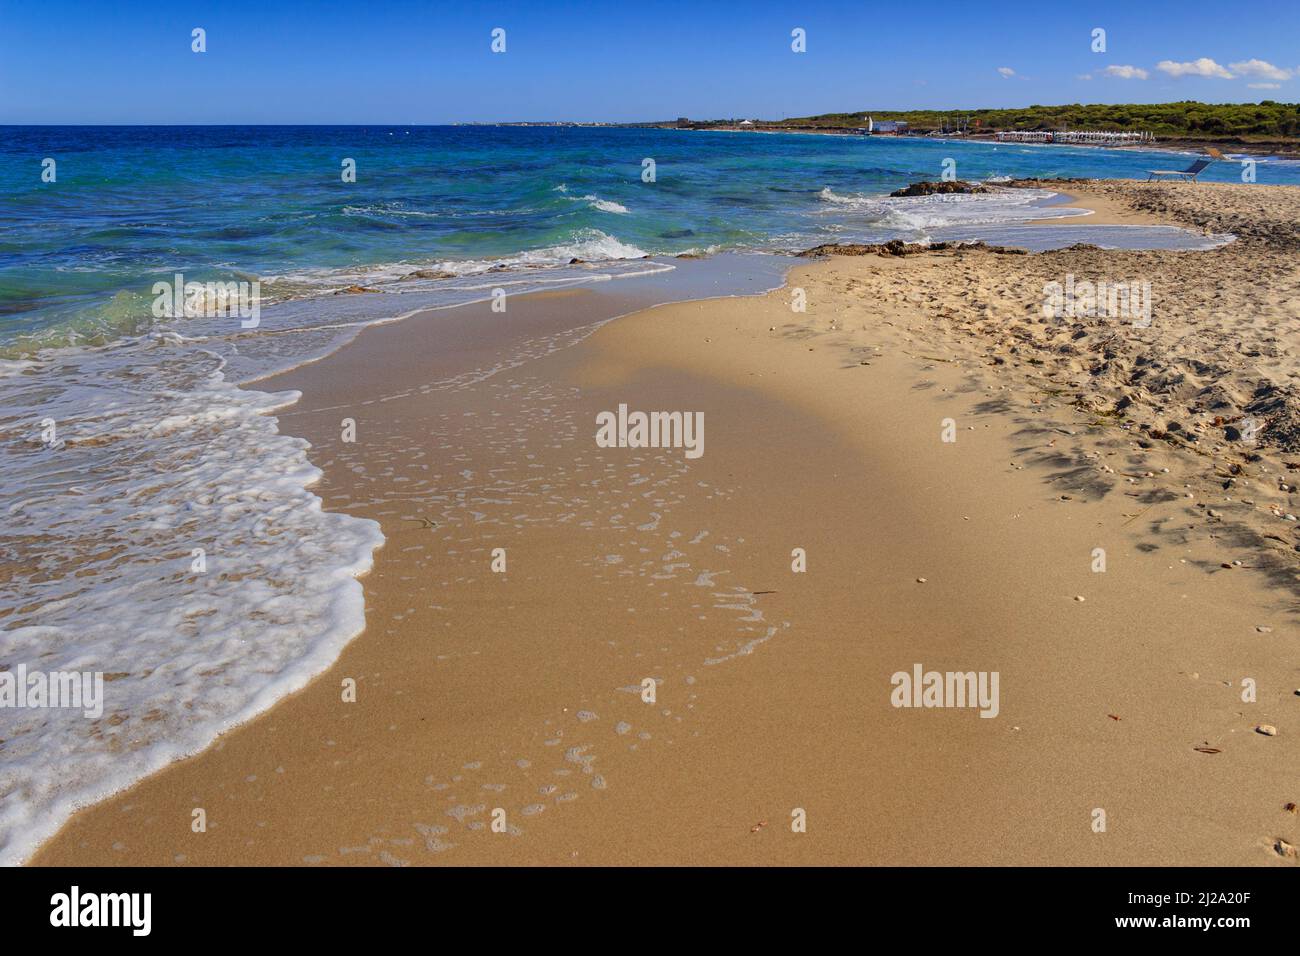 L'été.les plus belles plages de sable d'Apulia: Réserve naturelle le Cesine.C'est une zone humide d'importance internationale. Banque D'Images